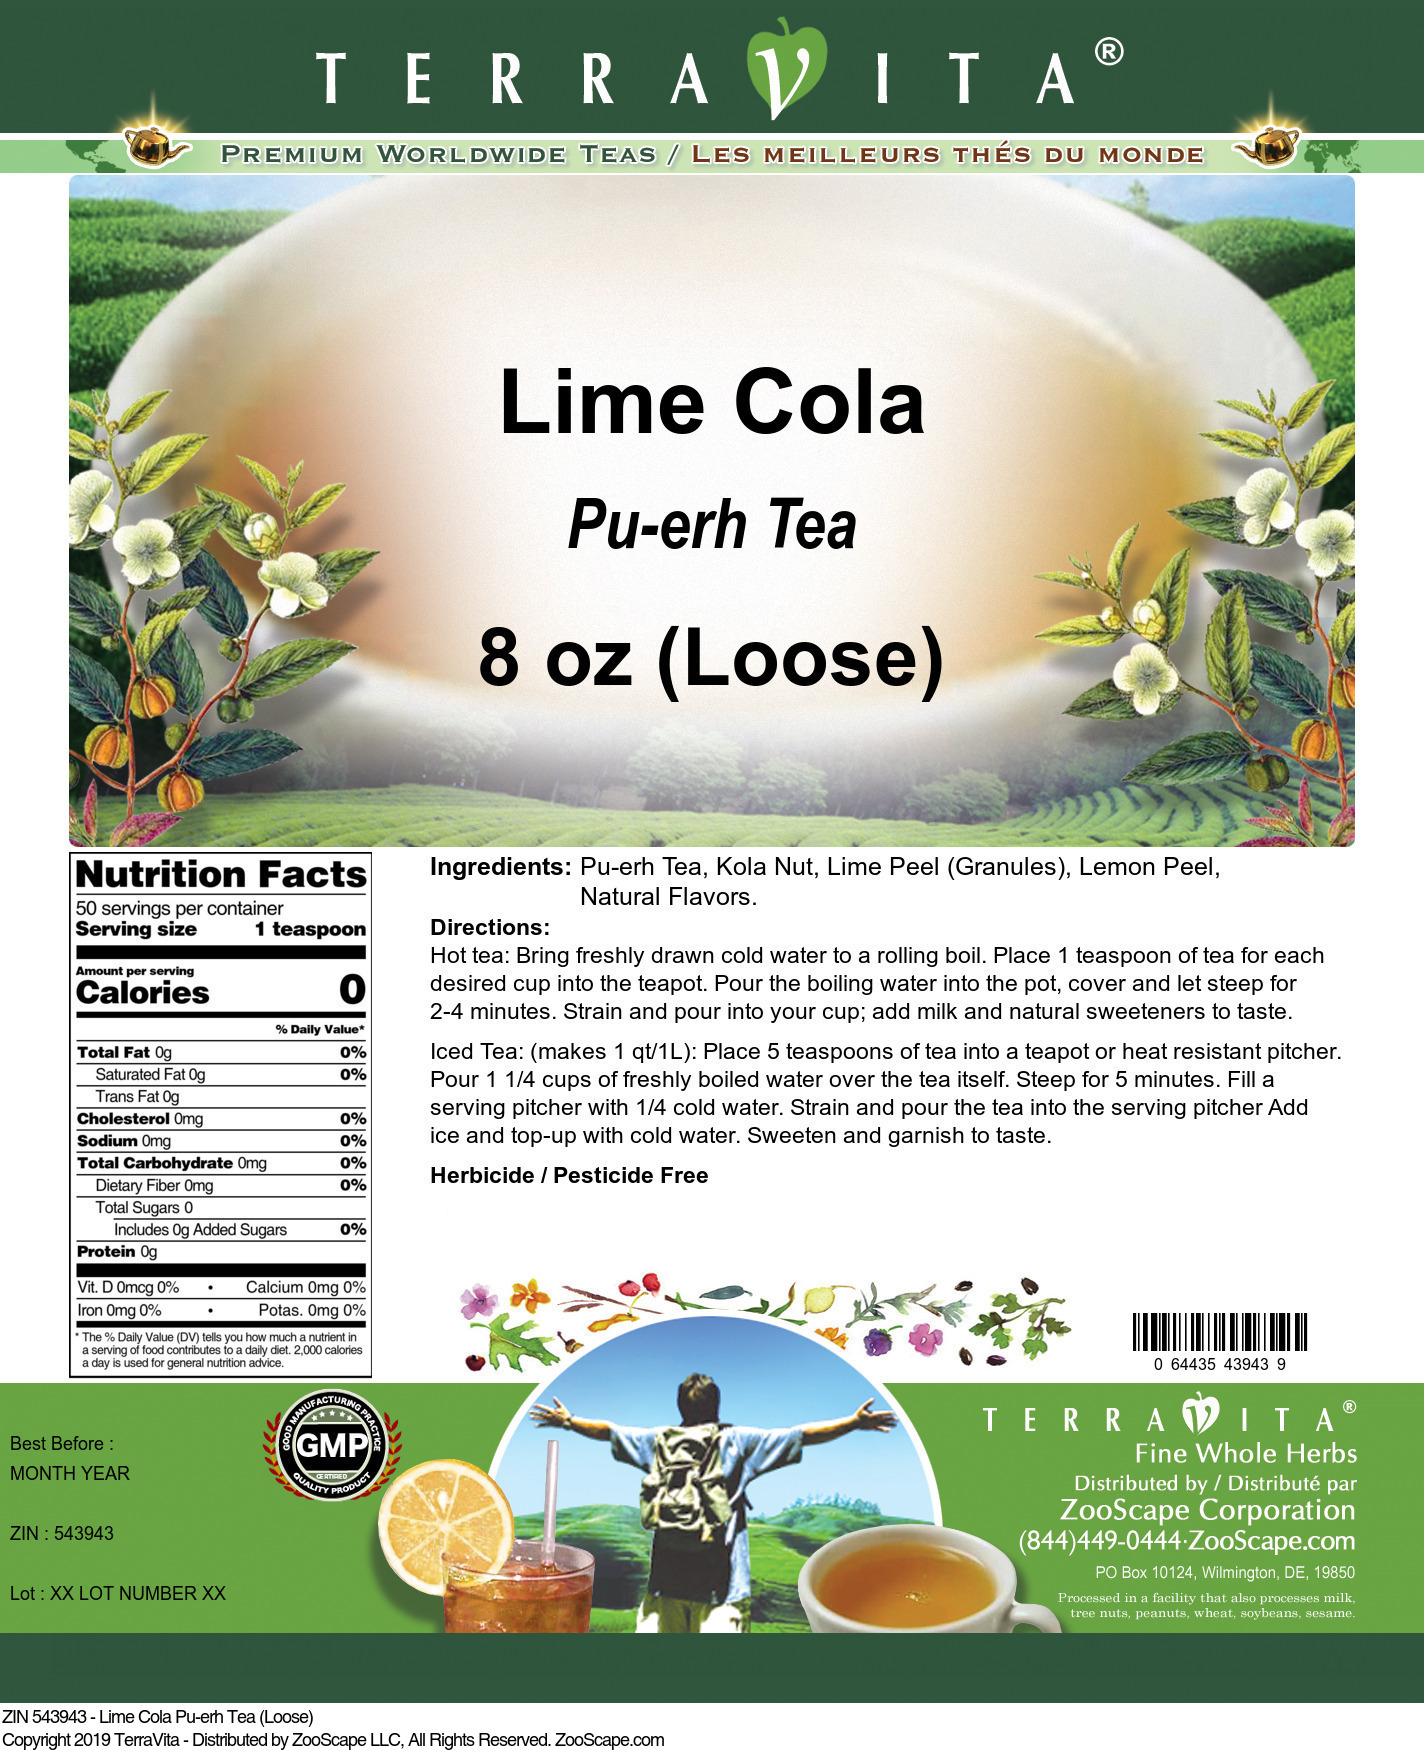 Lime Cola Pu-erh Tea (Loose) - Label